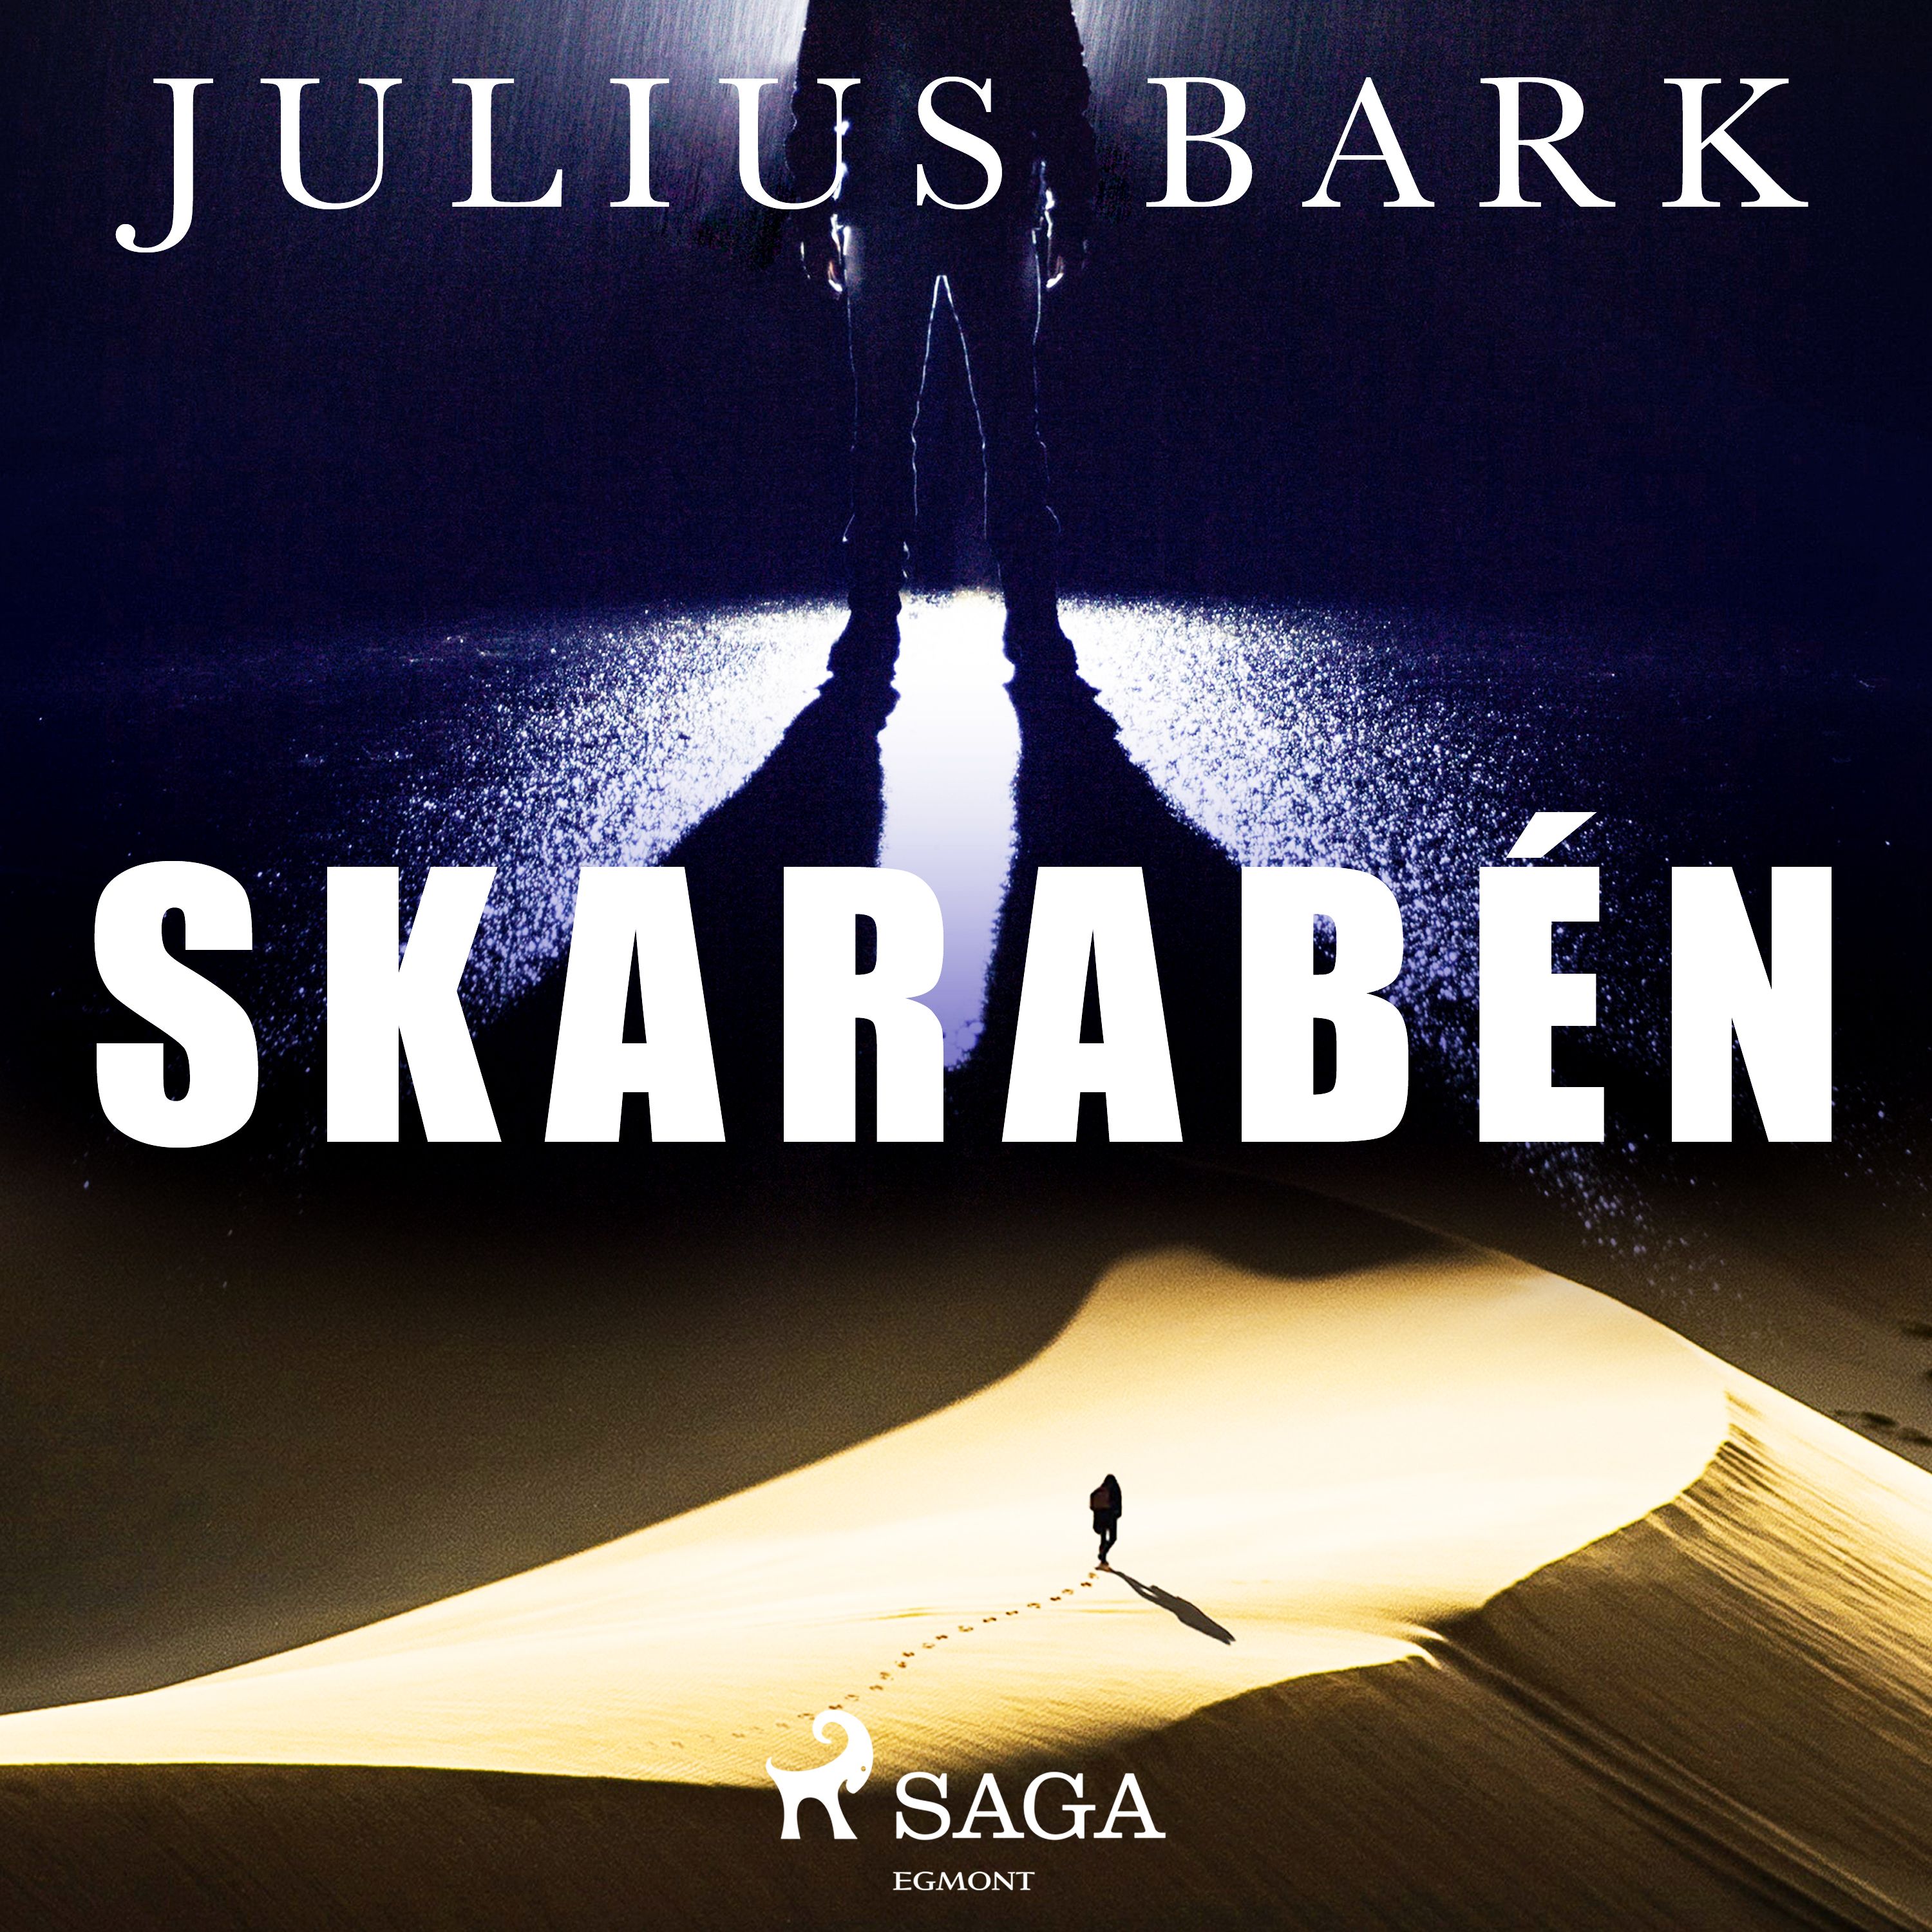 Skarabén, ljudbok av Julius Bark